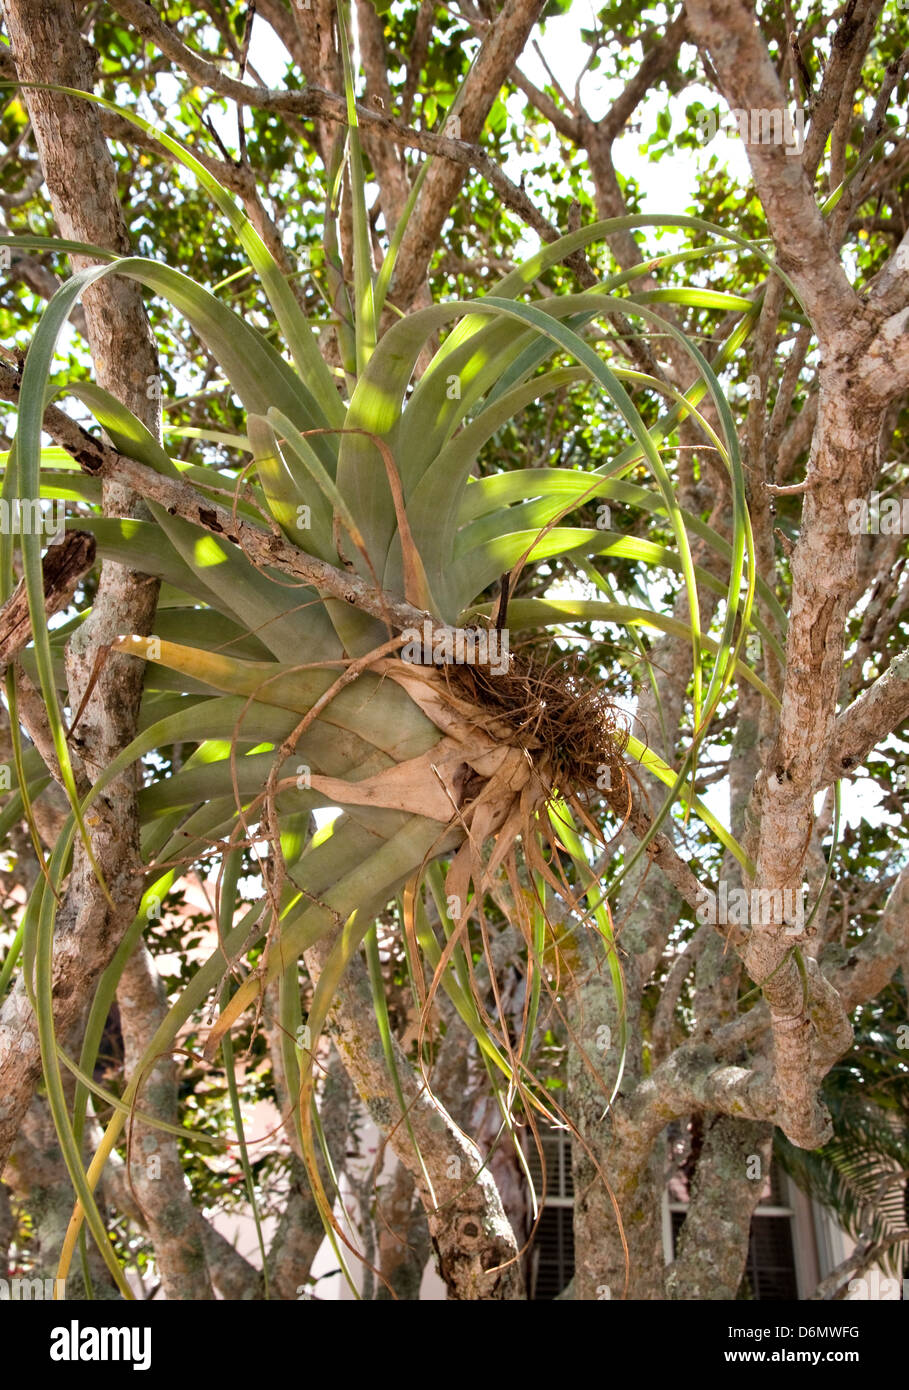 Tillandsia utriculata, de la plante, le bromélia. Epiphyte vit sur un arbre hôte, à l'aide de ses racines de l'ancrer. Ne nécessite pas le sol. Banque D'Images